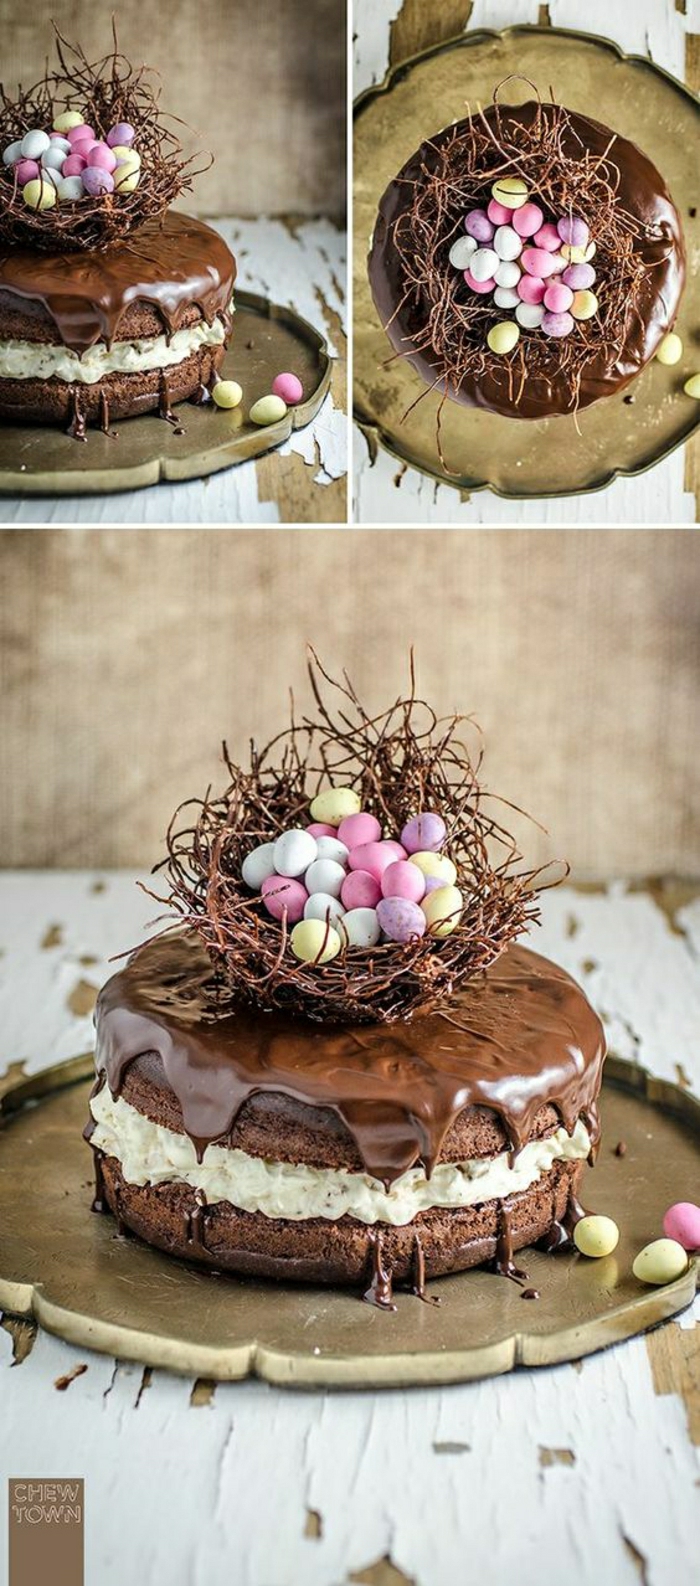 Čokoladni kolač s uskrsnim motivom Uskršnja košara s malim šarenim jajašcima